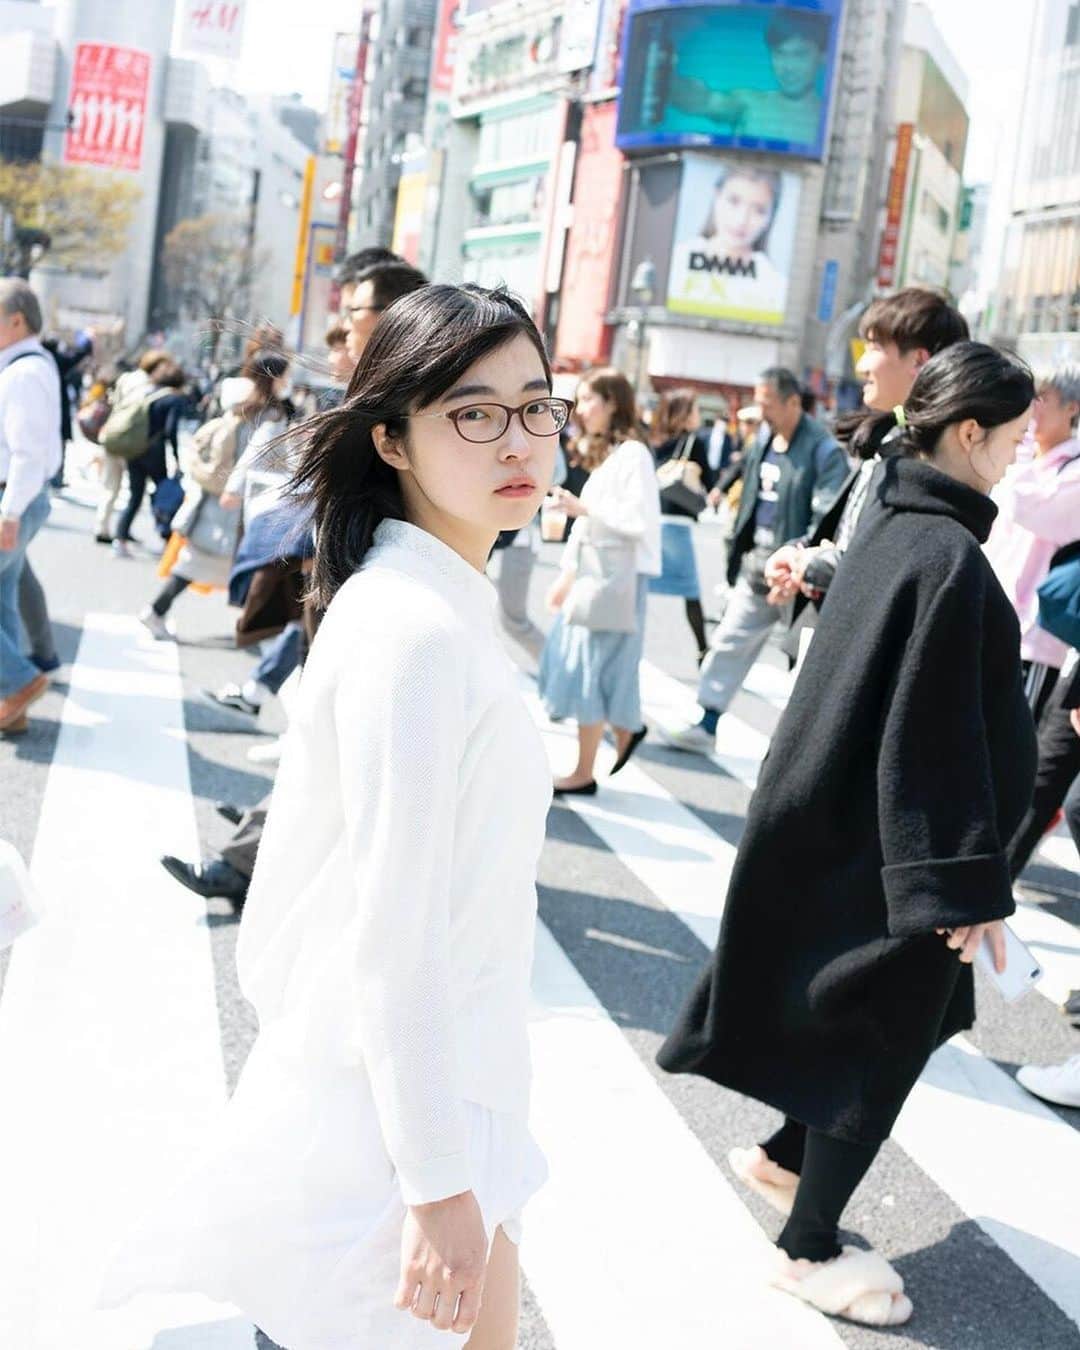 GENIC 公式インスタグラムさんのインスタグラム写真 - (GENIC 公式インスタグラムInstagram)「・ ＼11/28より開催／ フェティッシュ（偏愛）だけどイノセント（純真）な作風で、制服やコンプレックスを魅力的に撮影する写真家・青山裕企 @yukiao.jp が2018年から撮影を続ける、極私的ポートレート作品「少女礼讃」の集大成となる写真展「少女礼讃 everything.」- 極私的ポートレート集大成 - が、渋谷ヒカリエで開催。 本人からのメッセージとともに、写真展の情報を紹介します。 同時期開催中の写真展とあわせて、ぜひ足をお運びください。  -----------by 青山裕企 写真家・青山裕企は、「ソラリーマン」「スクールガール・コンプレックス」に続く第三の作品として、素性のわからないひとりの少女を、圧倒的な量と質で、謎めいた関係性において撮影し続けている作品「少女礼讃（しょうじょらいさん）」を、2018年より撮影し続けています。 極めて私的なポートレート写真である「少女礼讃」の今までに制作された作品と（私家版を含めて100冊以上の）写真集を、未公開の新作も含めて一挙に展示いたします。 会場では、全1,300ページにわたる少女礼讃の集大成となる写真集『少女礼讃 everything.』も販売いたします（部数限定）。  同時期開催の写真展「少女礼讃 naked.」（代官山AL）、「少女礼讃 library.」（早稲田ユカイハンズ・ギャラリー）と、ぜひあわせてご覧ください。  “なぜ、ひとりの少女をどこまでも撮り続けているのか？” ぜひ、会場にて作品を見ながら答えを探してください。 ----------------------  ＜青山裕企写真展「少女礼讃 everything.」 - 極私的ポートレート集大成 -＞  開催日時：2023年11月28日（火）～12月5日（火） 11:00～20:00  会場：8/CUBE（渋谷ヒカリエ8F） @hikarie8 「表参道駅」B2出口から徒歩で1分  ＝＝＝同時期開催＝＝＝ ＜青山裕企 写真展「少女礼讃 naked.」＞  開催日時：2023年11月23日（木・祝）～12月5日（火） 12:00～20:00 会場：AL @al_tokyo 「代官山駅」から徒歩で約7分  ＜青山裕企 写真展「少女礼讃 library.」＞  開催日時：2023年11月23日（木・祝）～12月5日（火） 13:00～19:00 休廊日：月・火・水 会場：ユカイハンズ・ギャラリー  「江戸川橋駅」から徒歩で約9分」11月28日 21時04分 - genic_mag